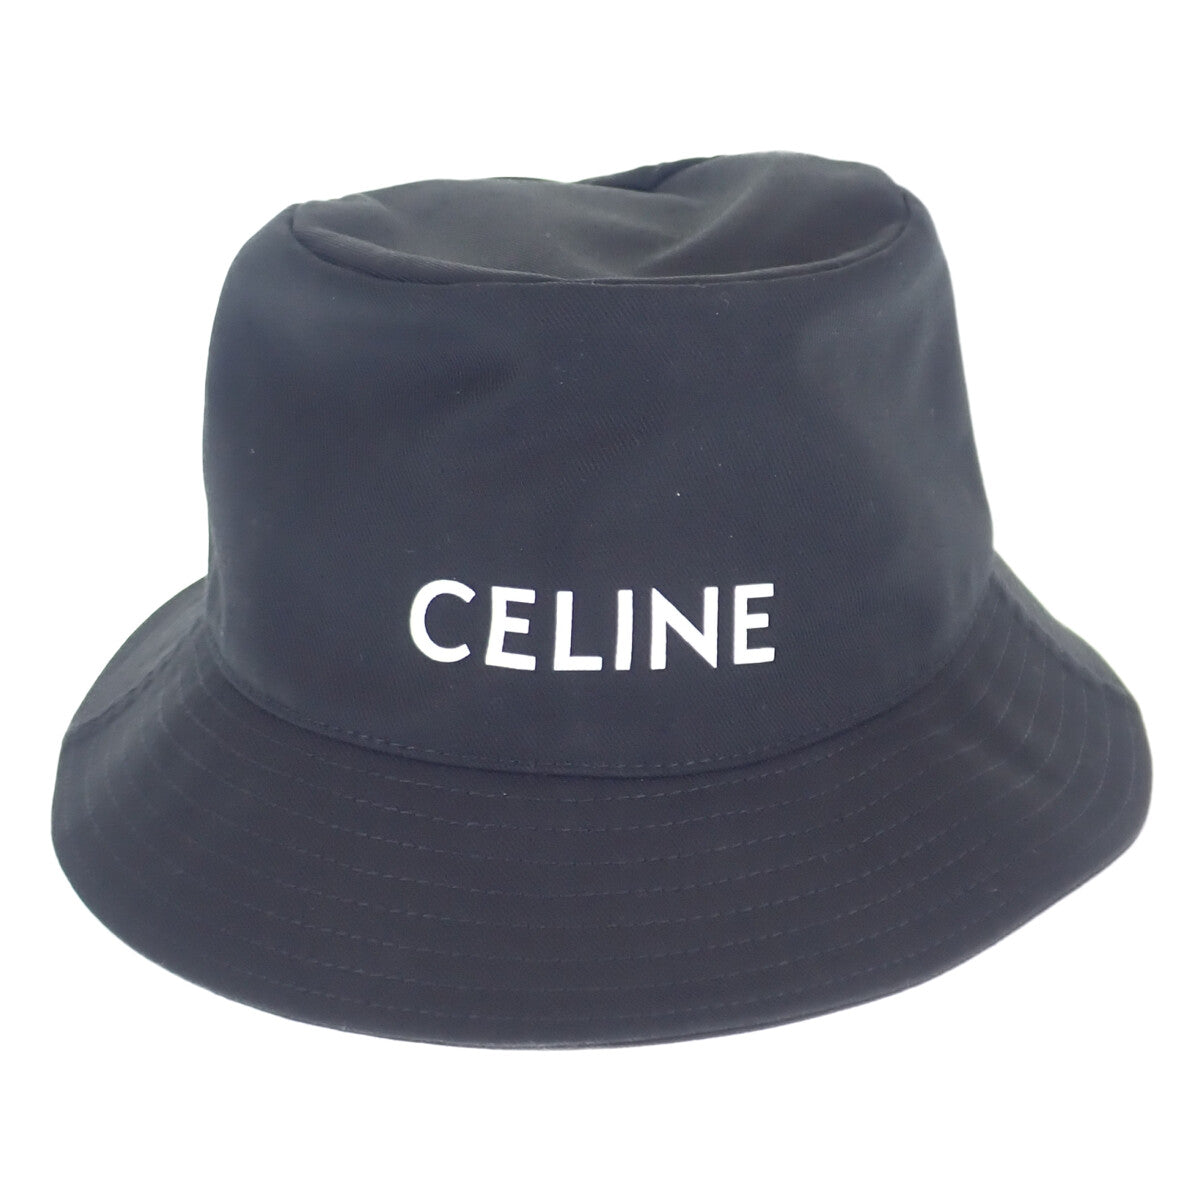 セリーヌ 帽子 ロゴ バケットハット サイズM  ブラック CELINE   | ファッション ブランド小物 ユニセックス 黒 シンプル カジュアル Aランク